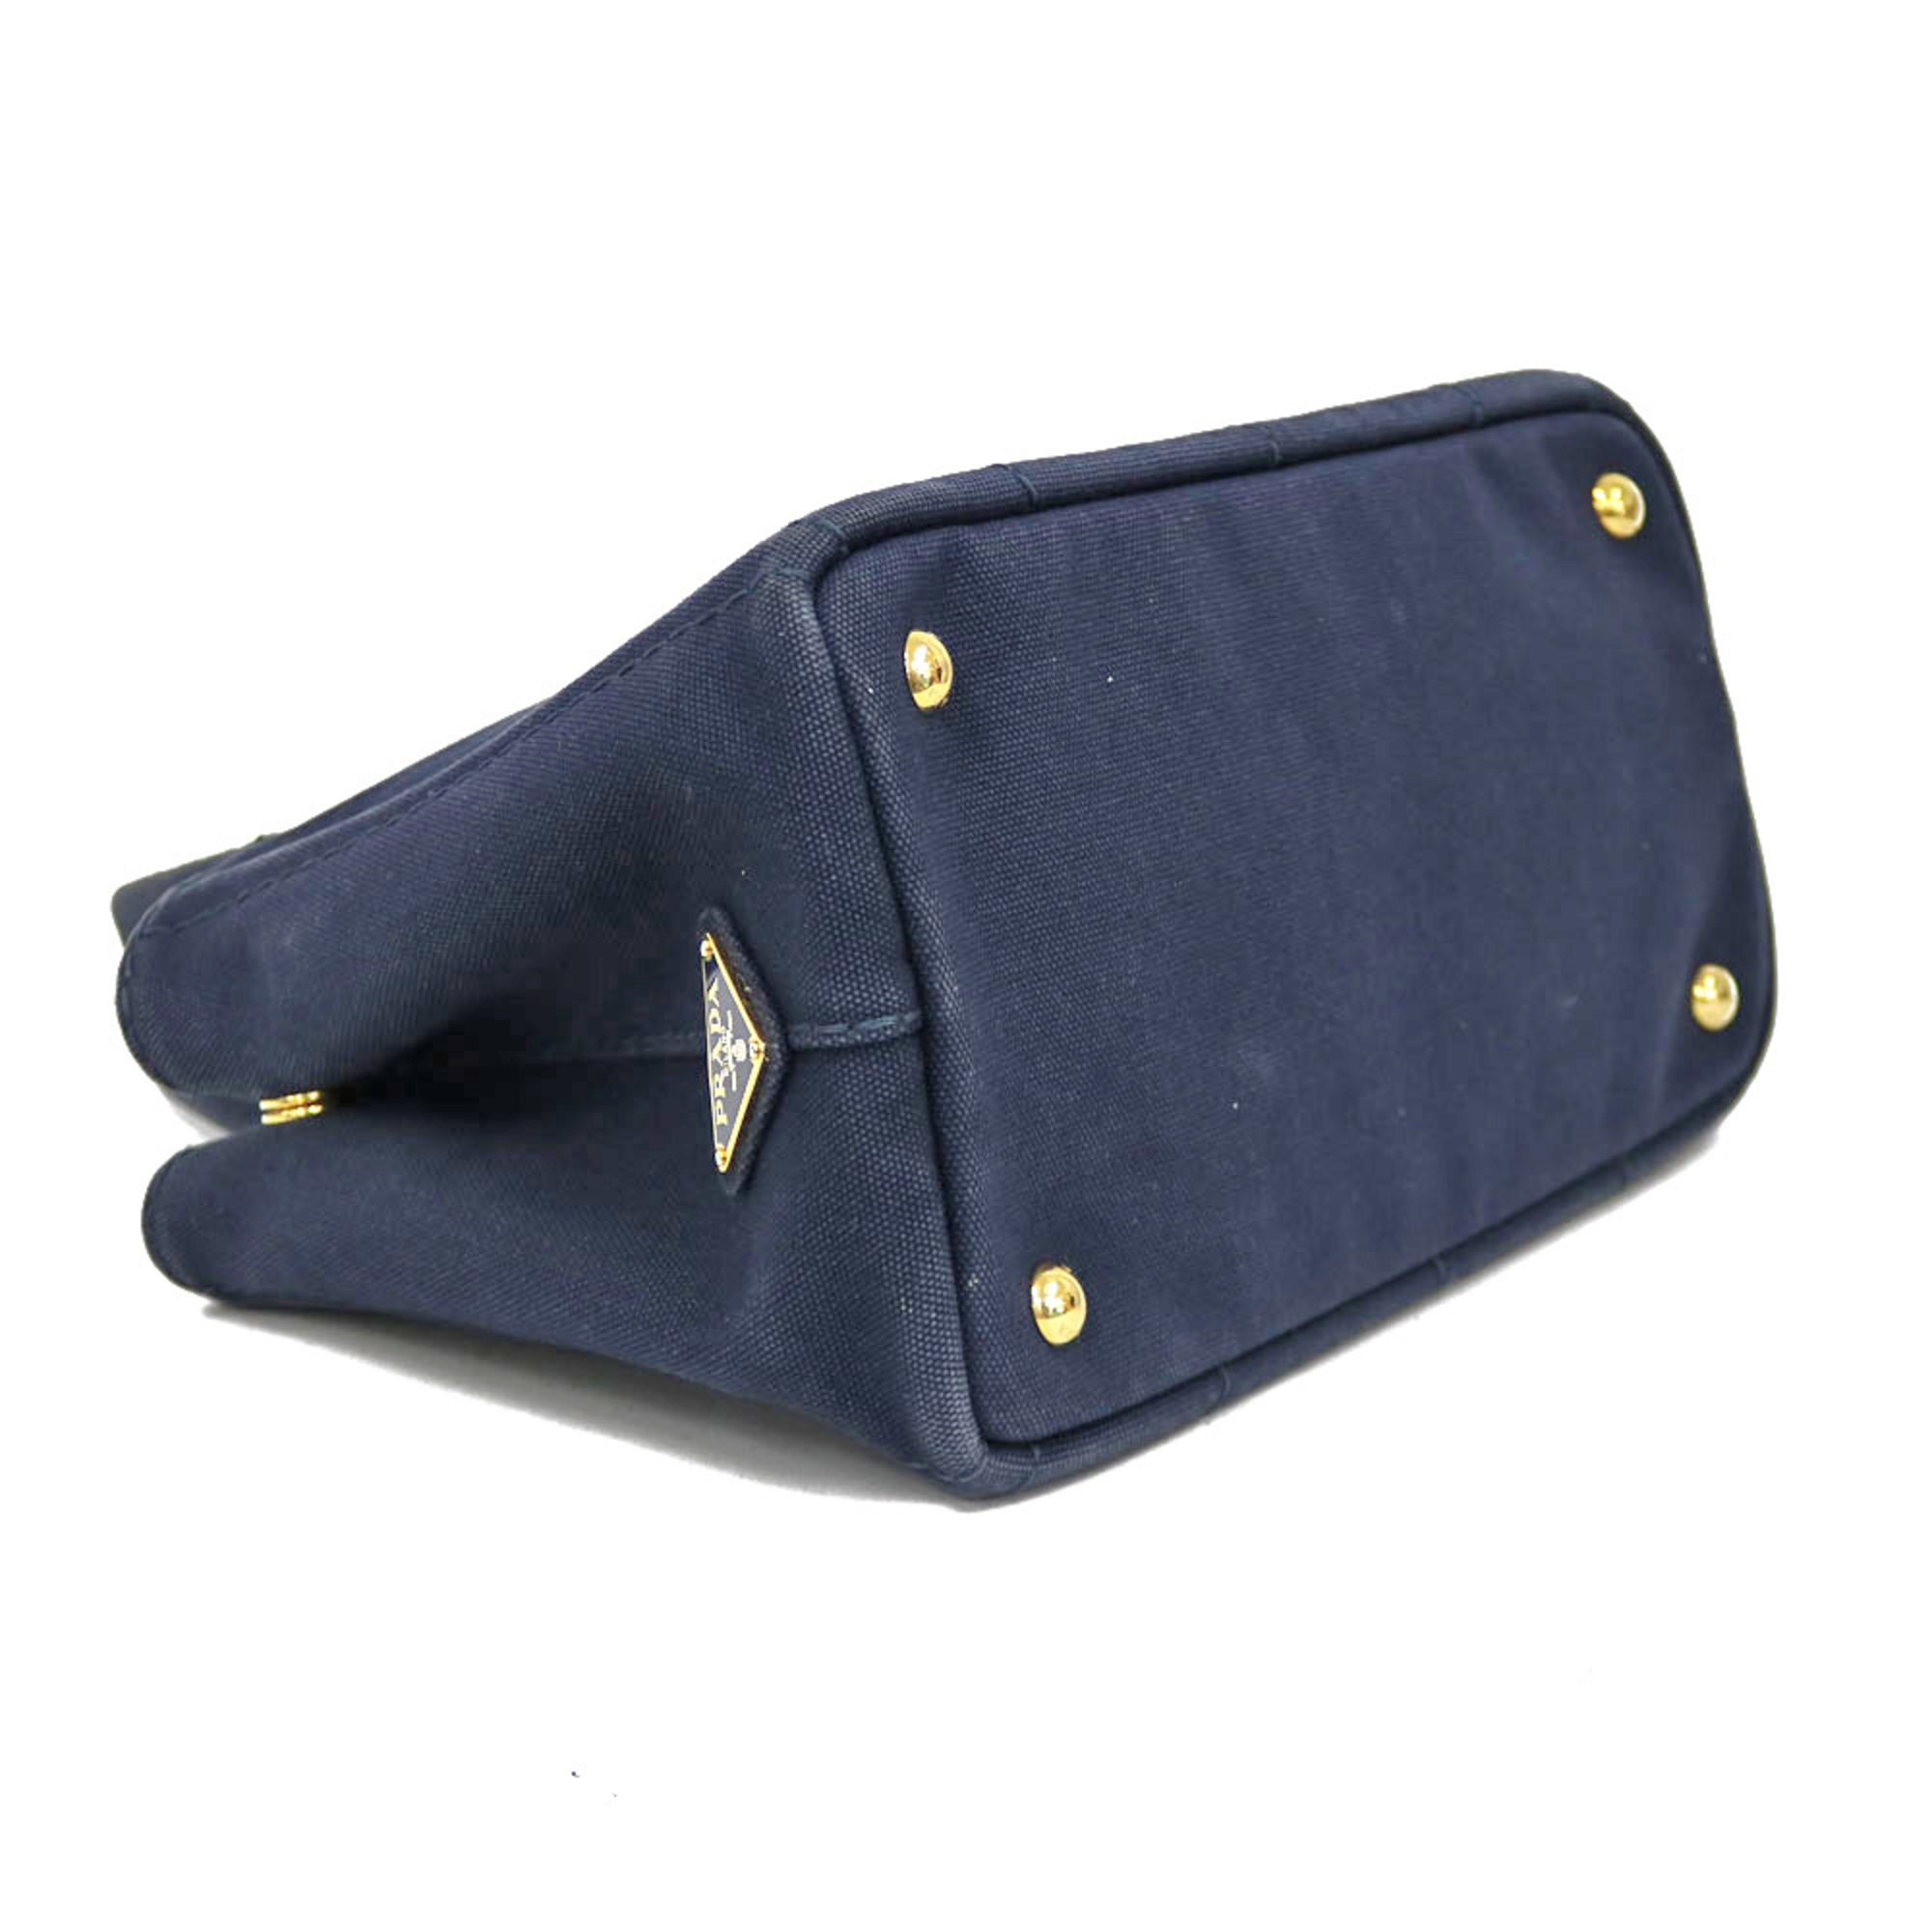 Prada Canapato PM Shoulder Bag Canvas Navy Ladies PRADA Handbag BRB01000000002363